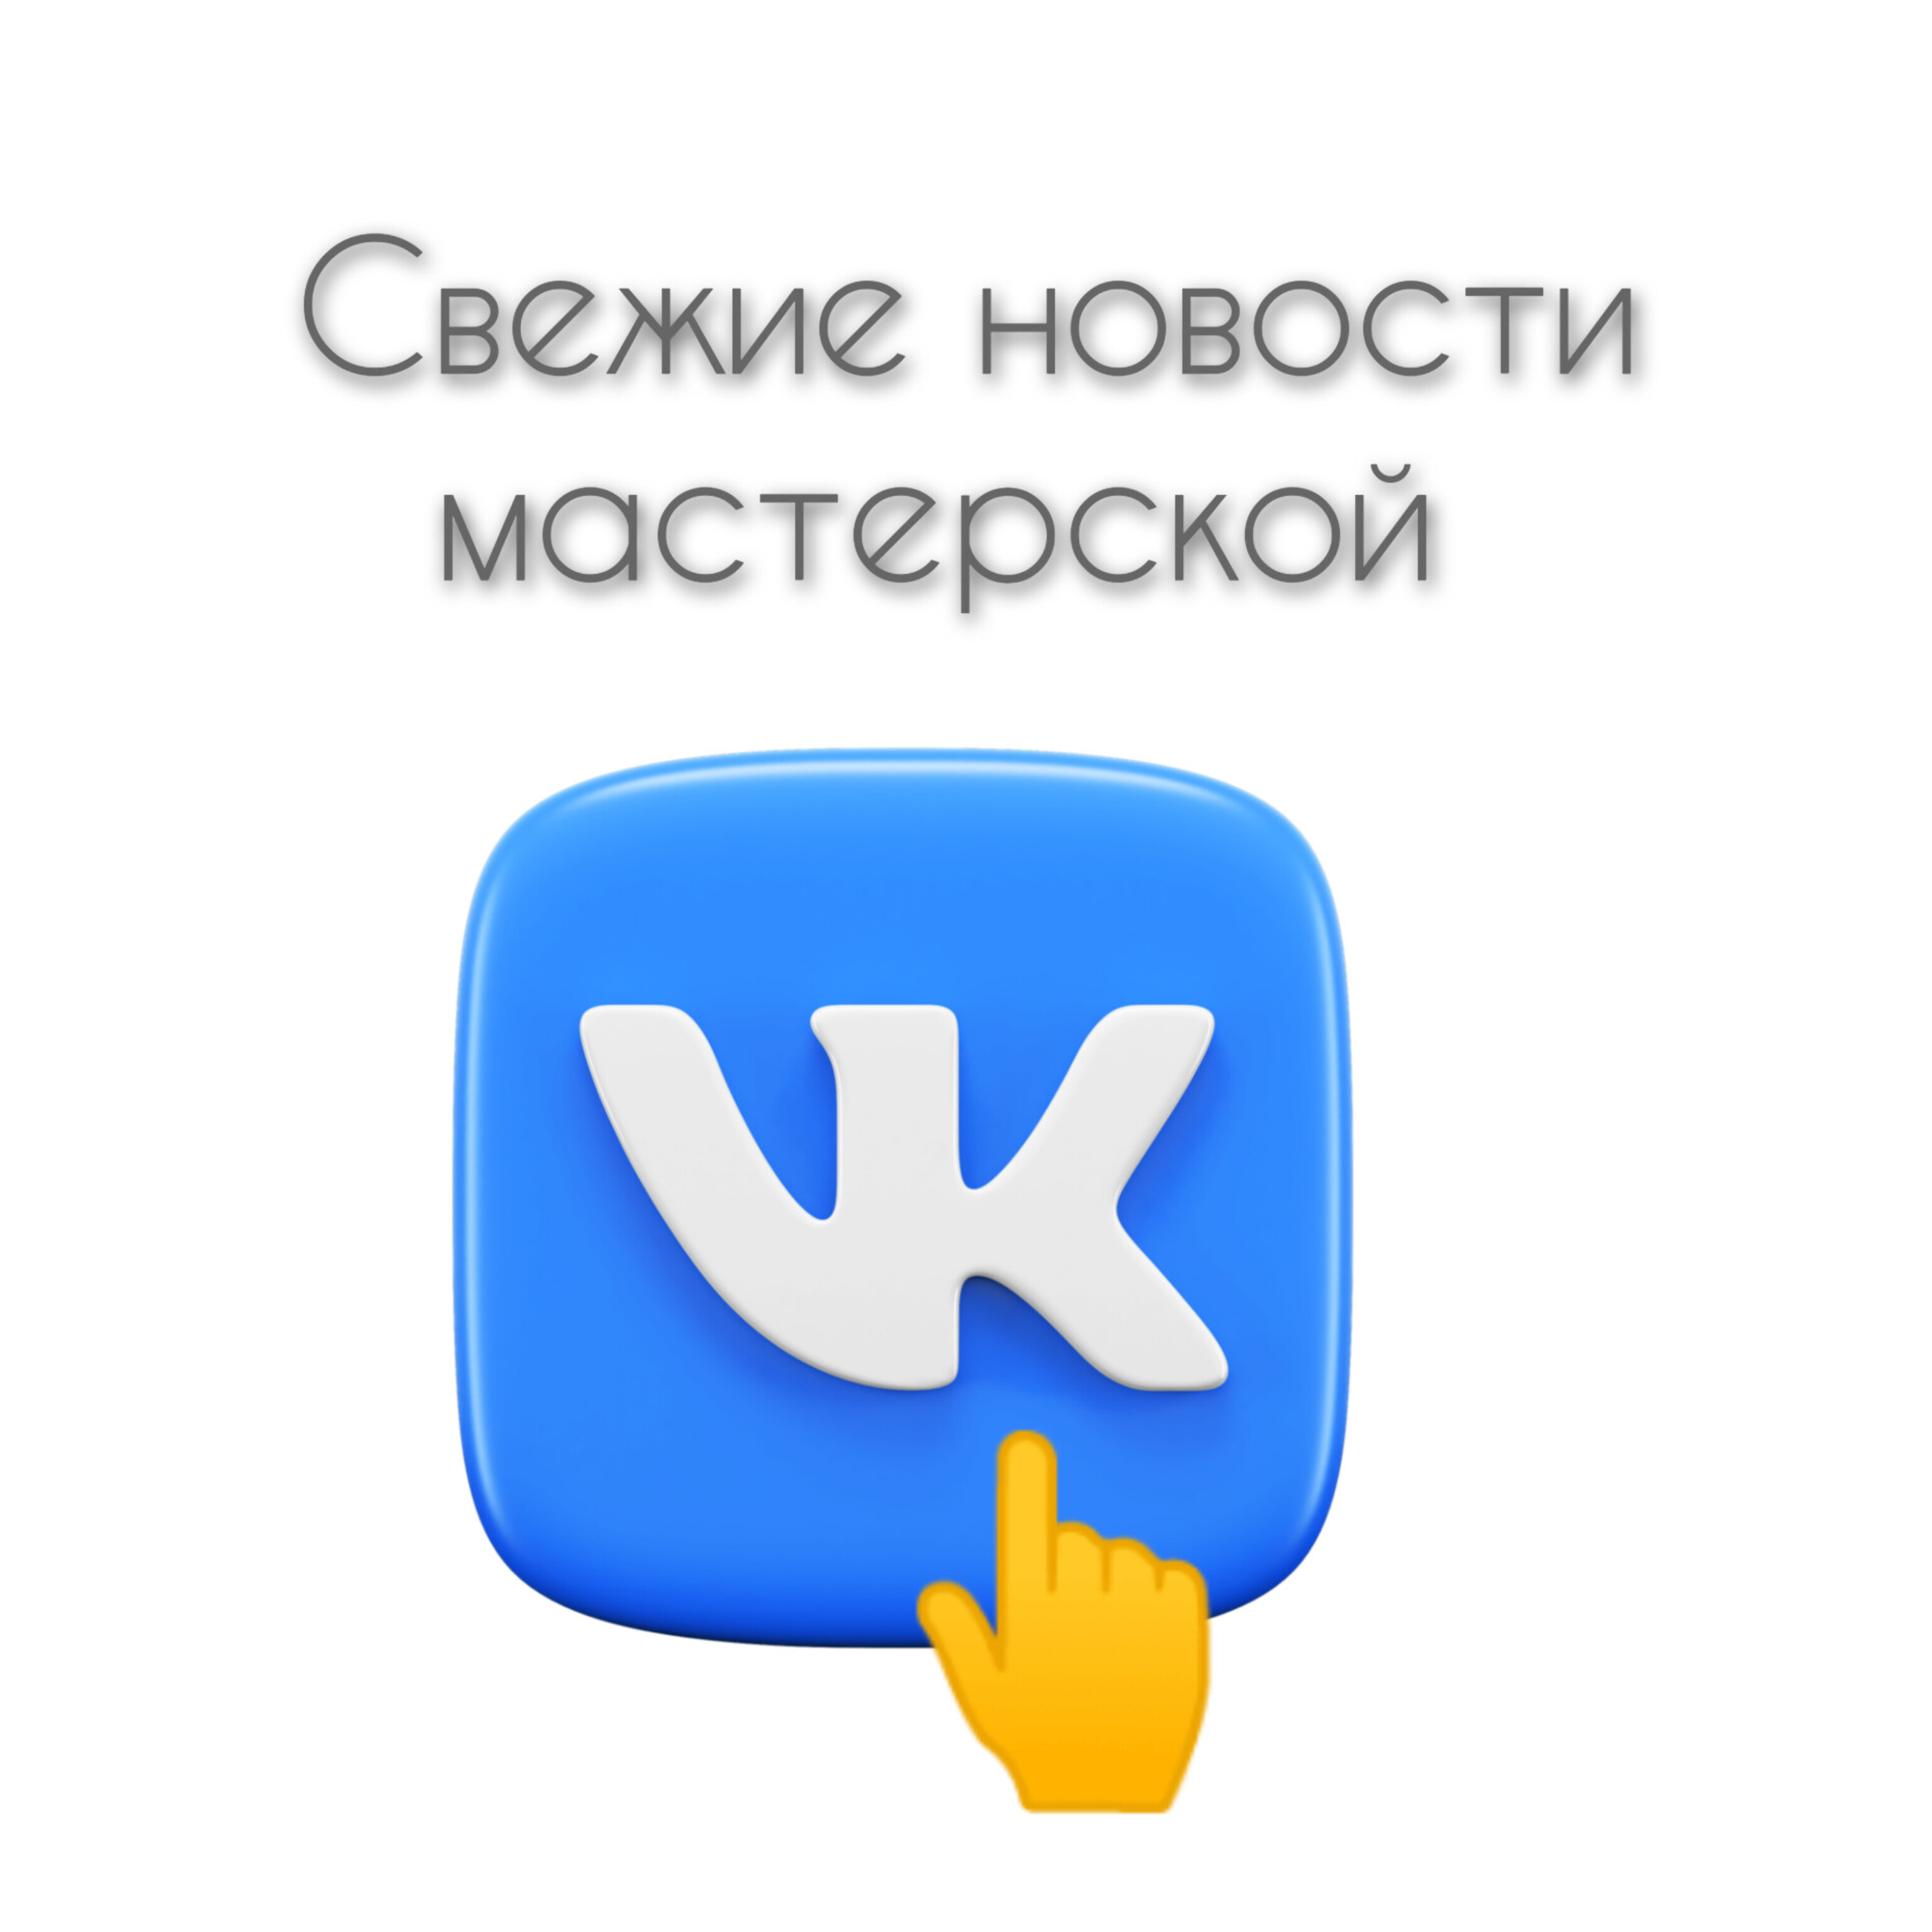 Свежие новости мастерской в группе ВКонтакте.